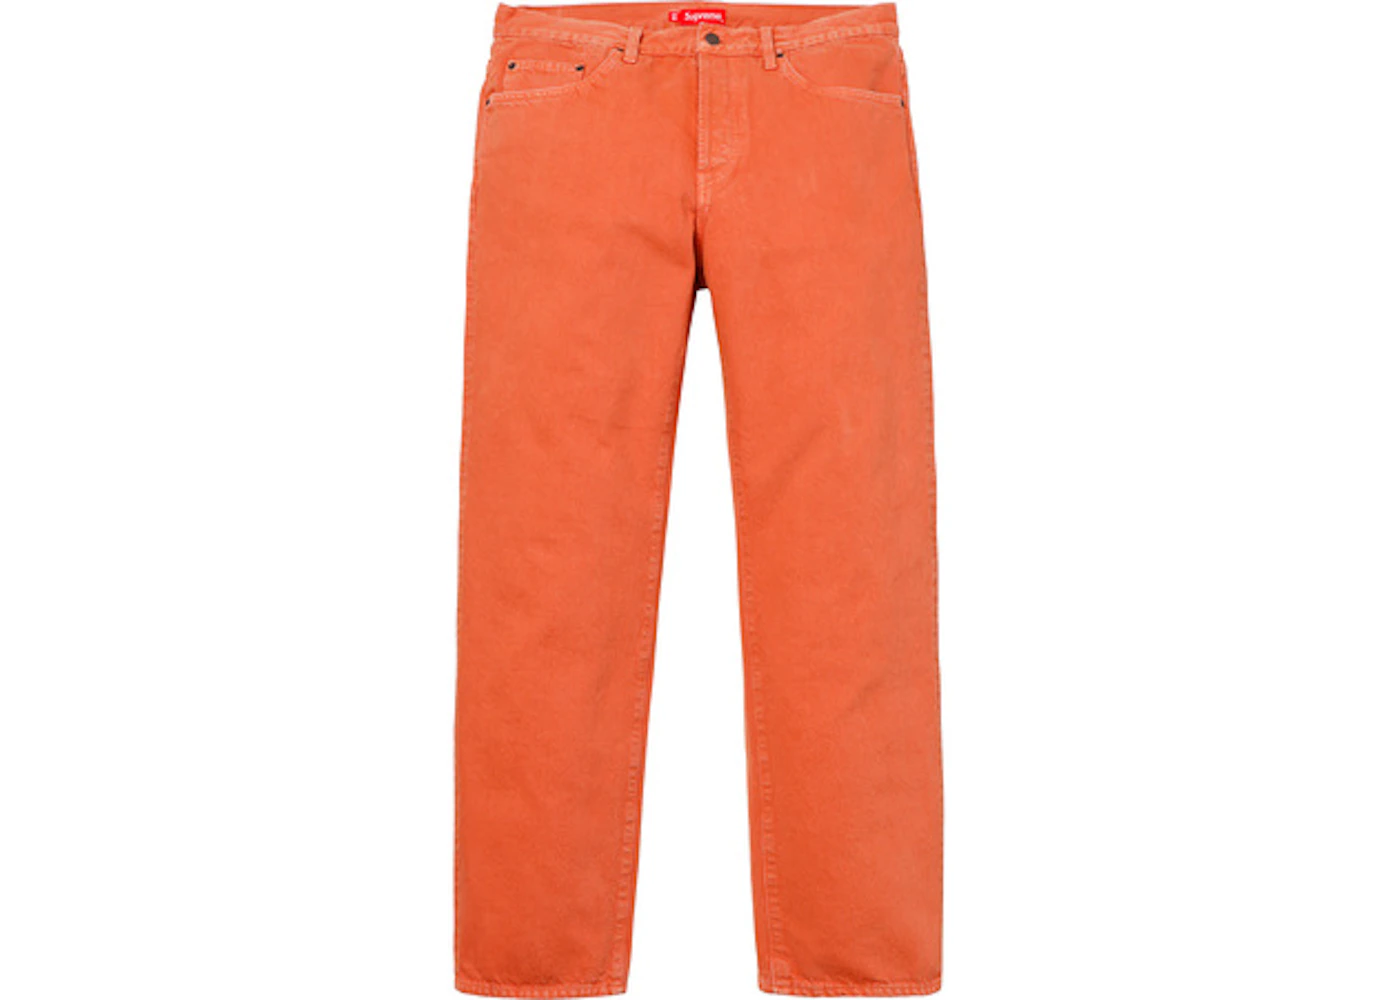 Supreme Washed Regular Jeans Orange Men's - SS18 - US